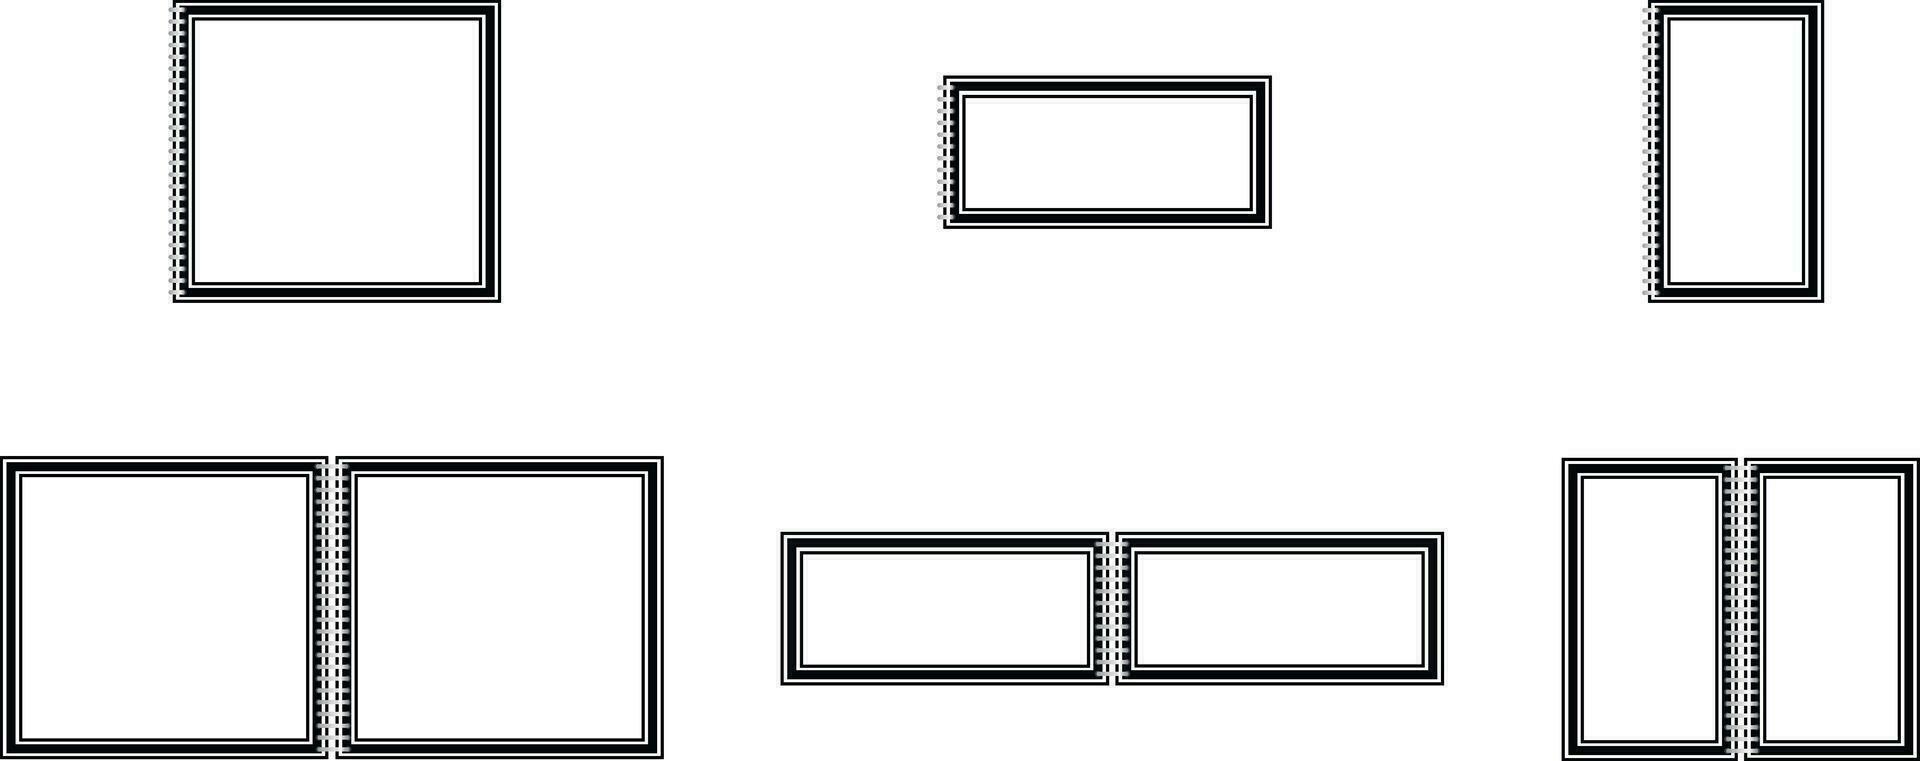 ilustração do esvaziar fechadas e aberto caderno quadros do vários tamanhos e formas, brincar isolado em branco fundo. caderno ou modelo espiral organizador. vetor